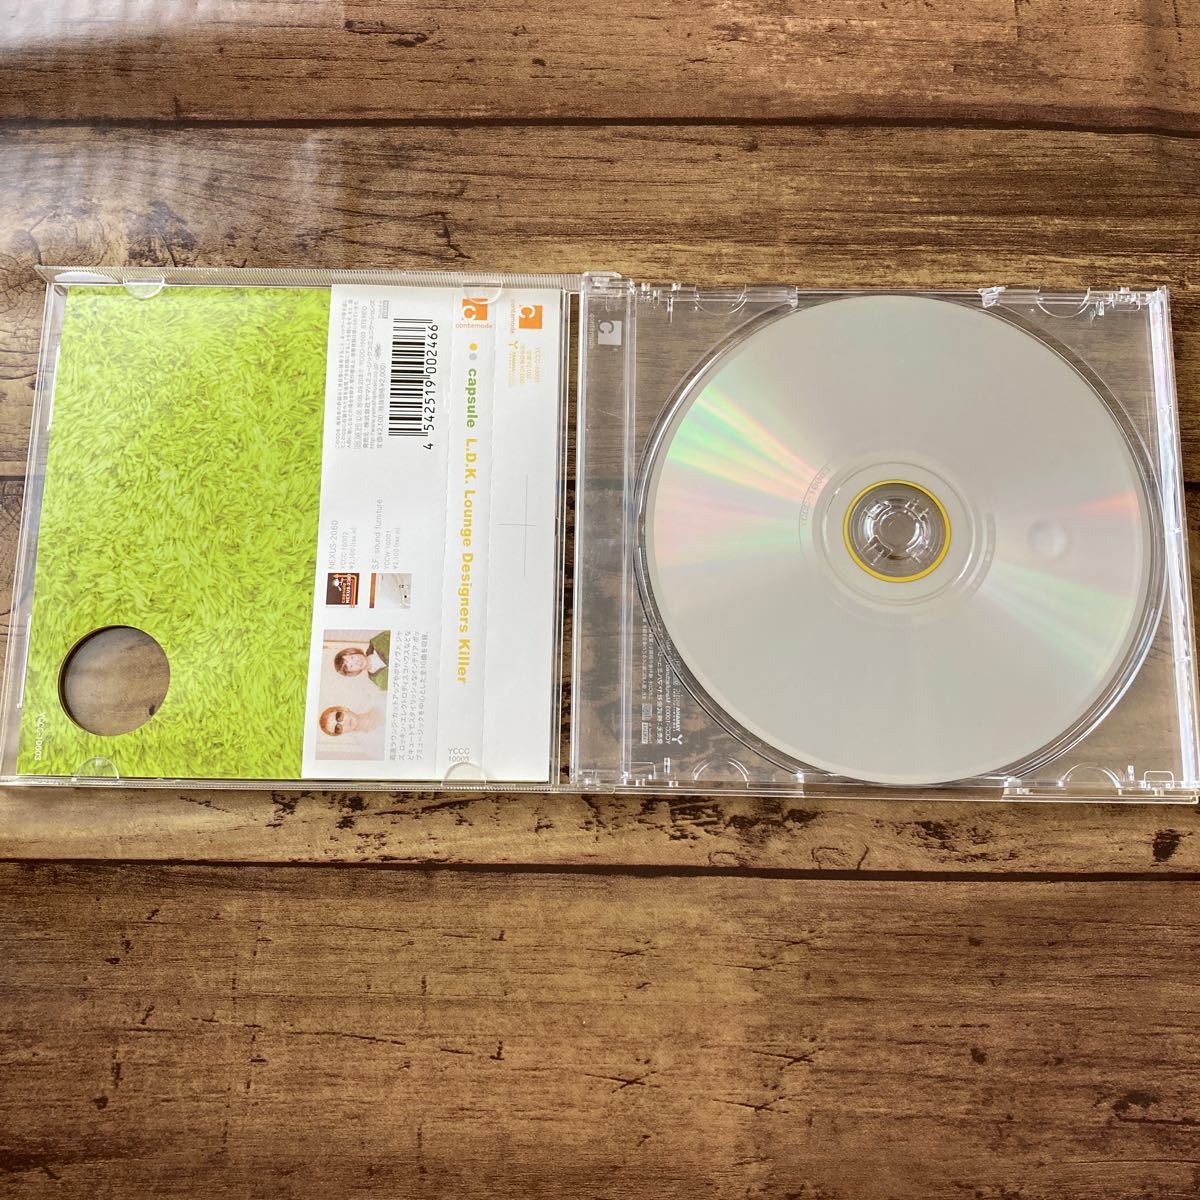 L.D.K Lounge Designers Killer CD capsule